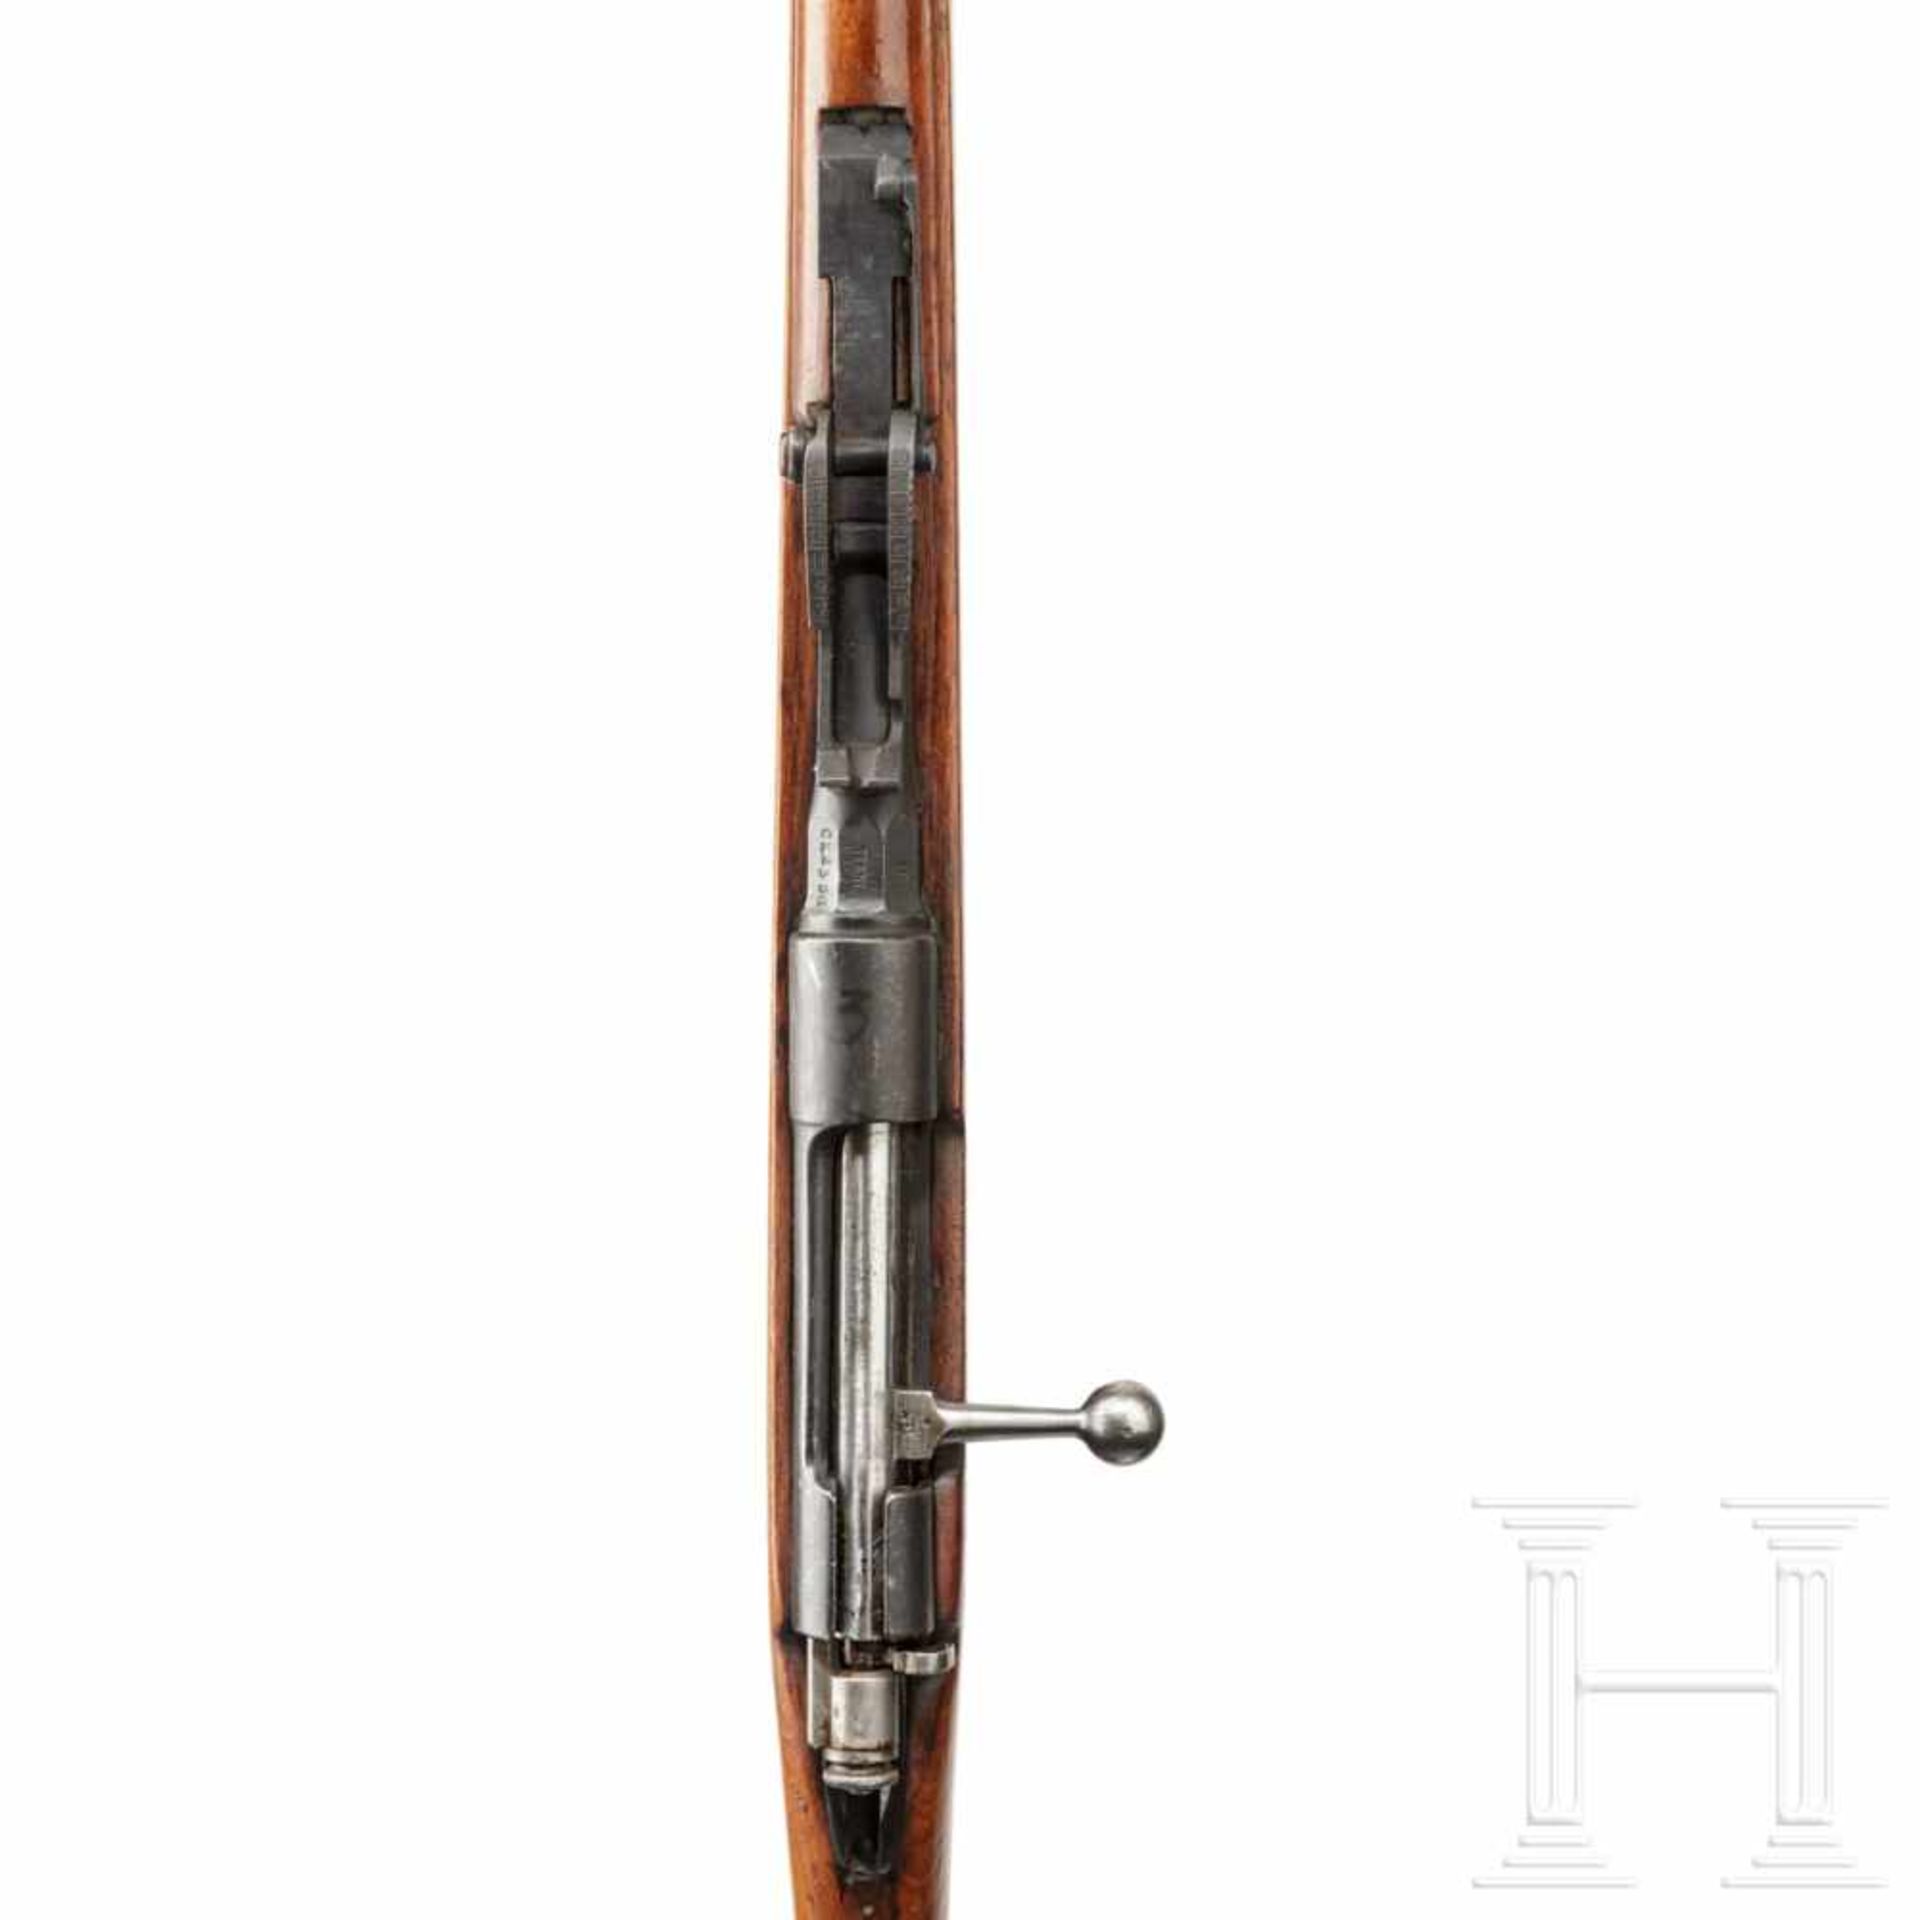 Gewehr Carcano Mod. 1891Kal. 6,5x52, Nr. CK2358, blanker Lauf. Sechsschüssig. Brit. Beschuss. - Bild 3 aus 3